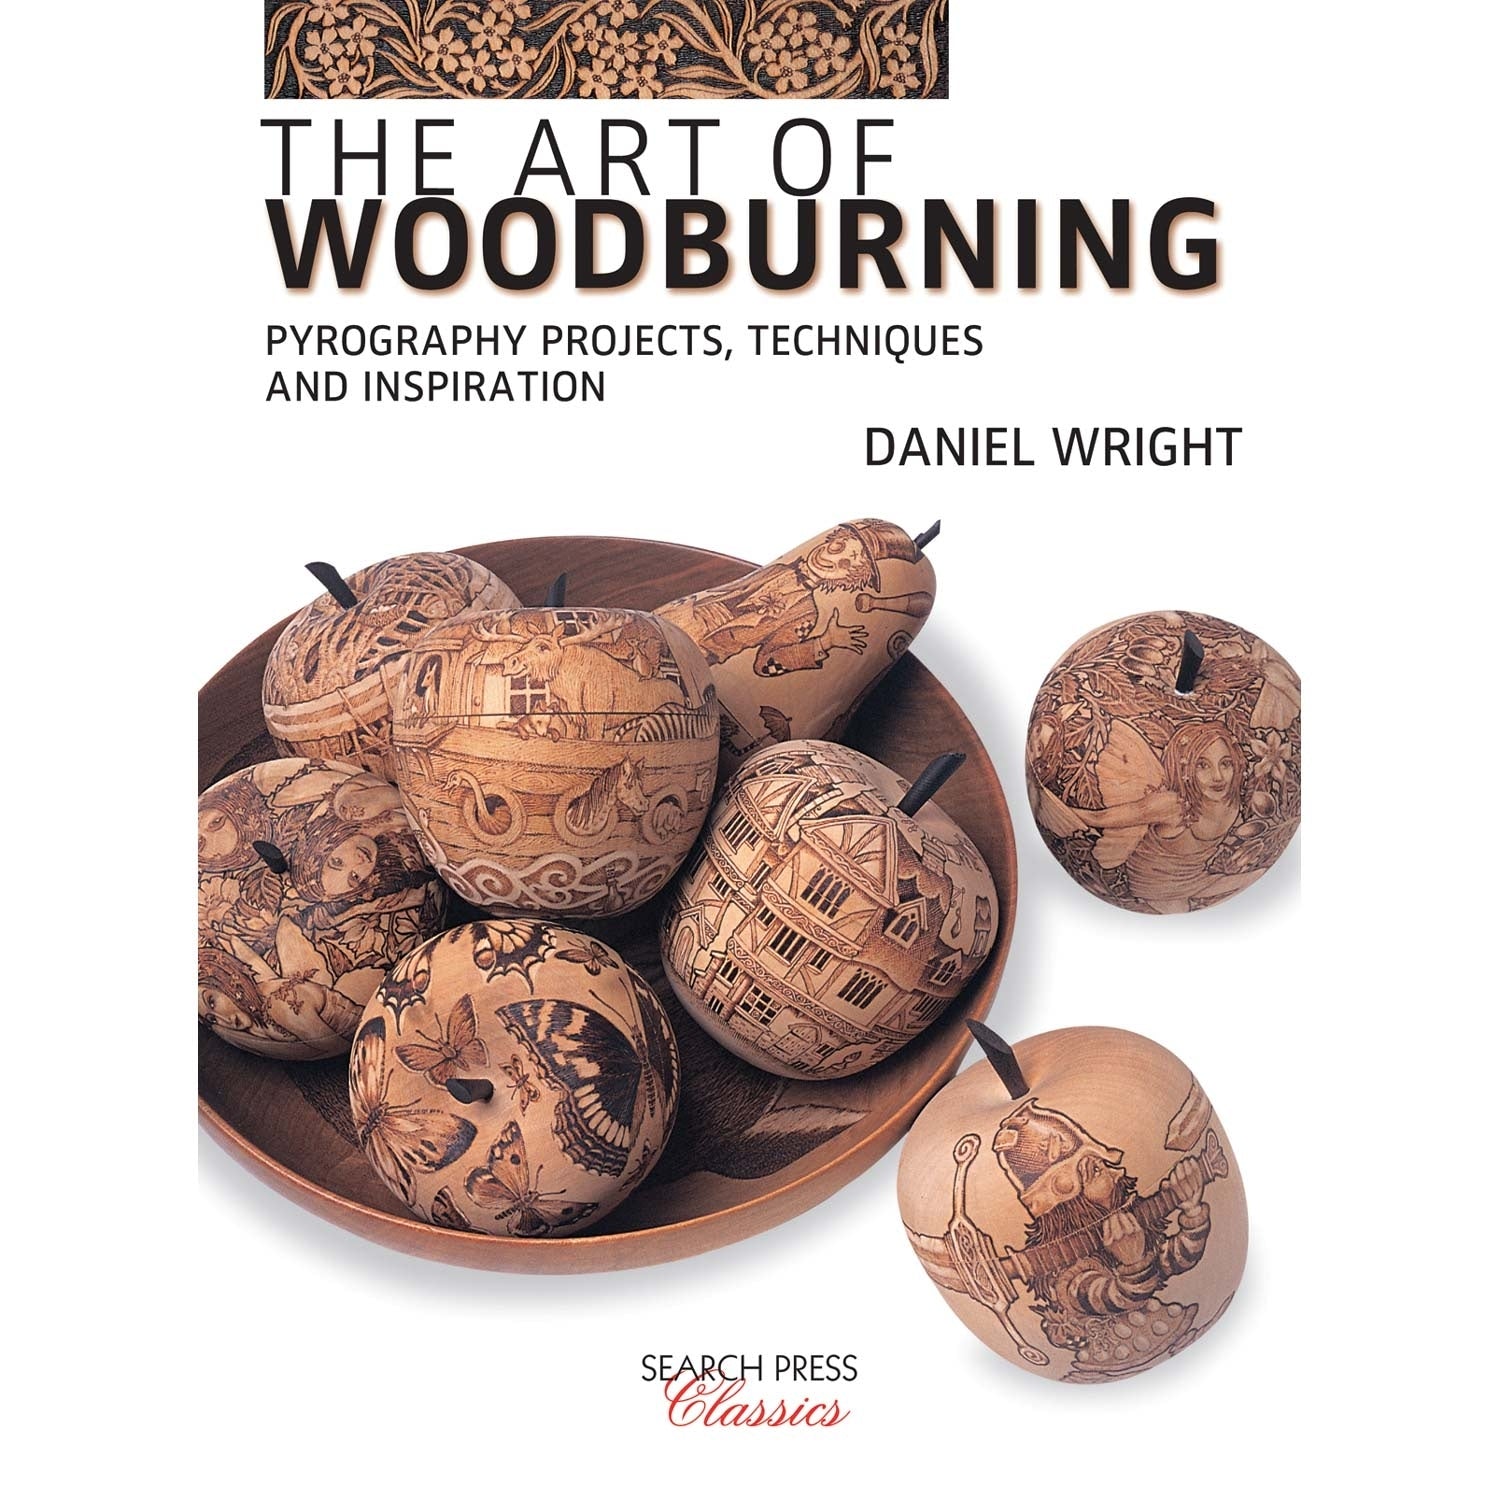 Cerca libri di pressione - The Art of Woodburning